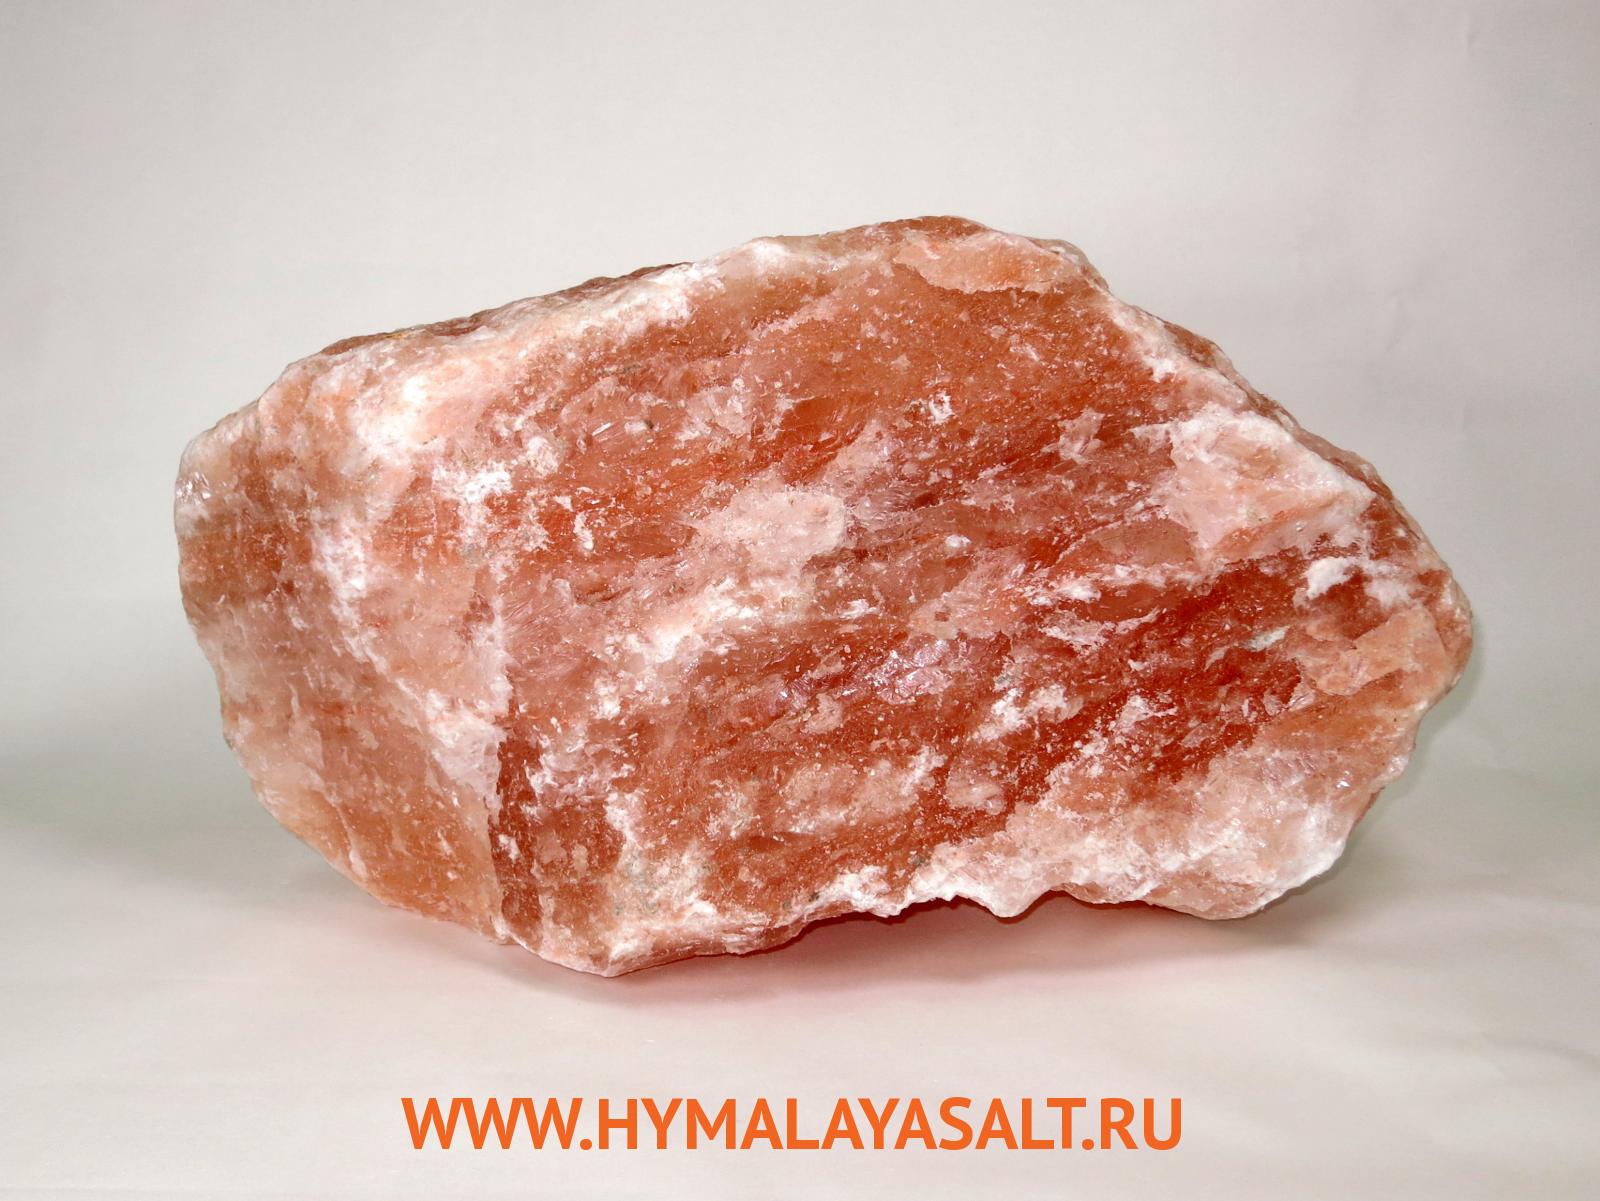 Гималайская соль: Камень из гималайской соли 20 кг